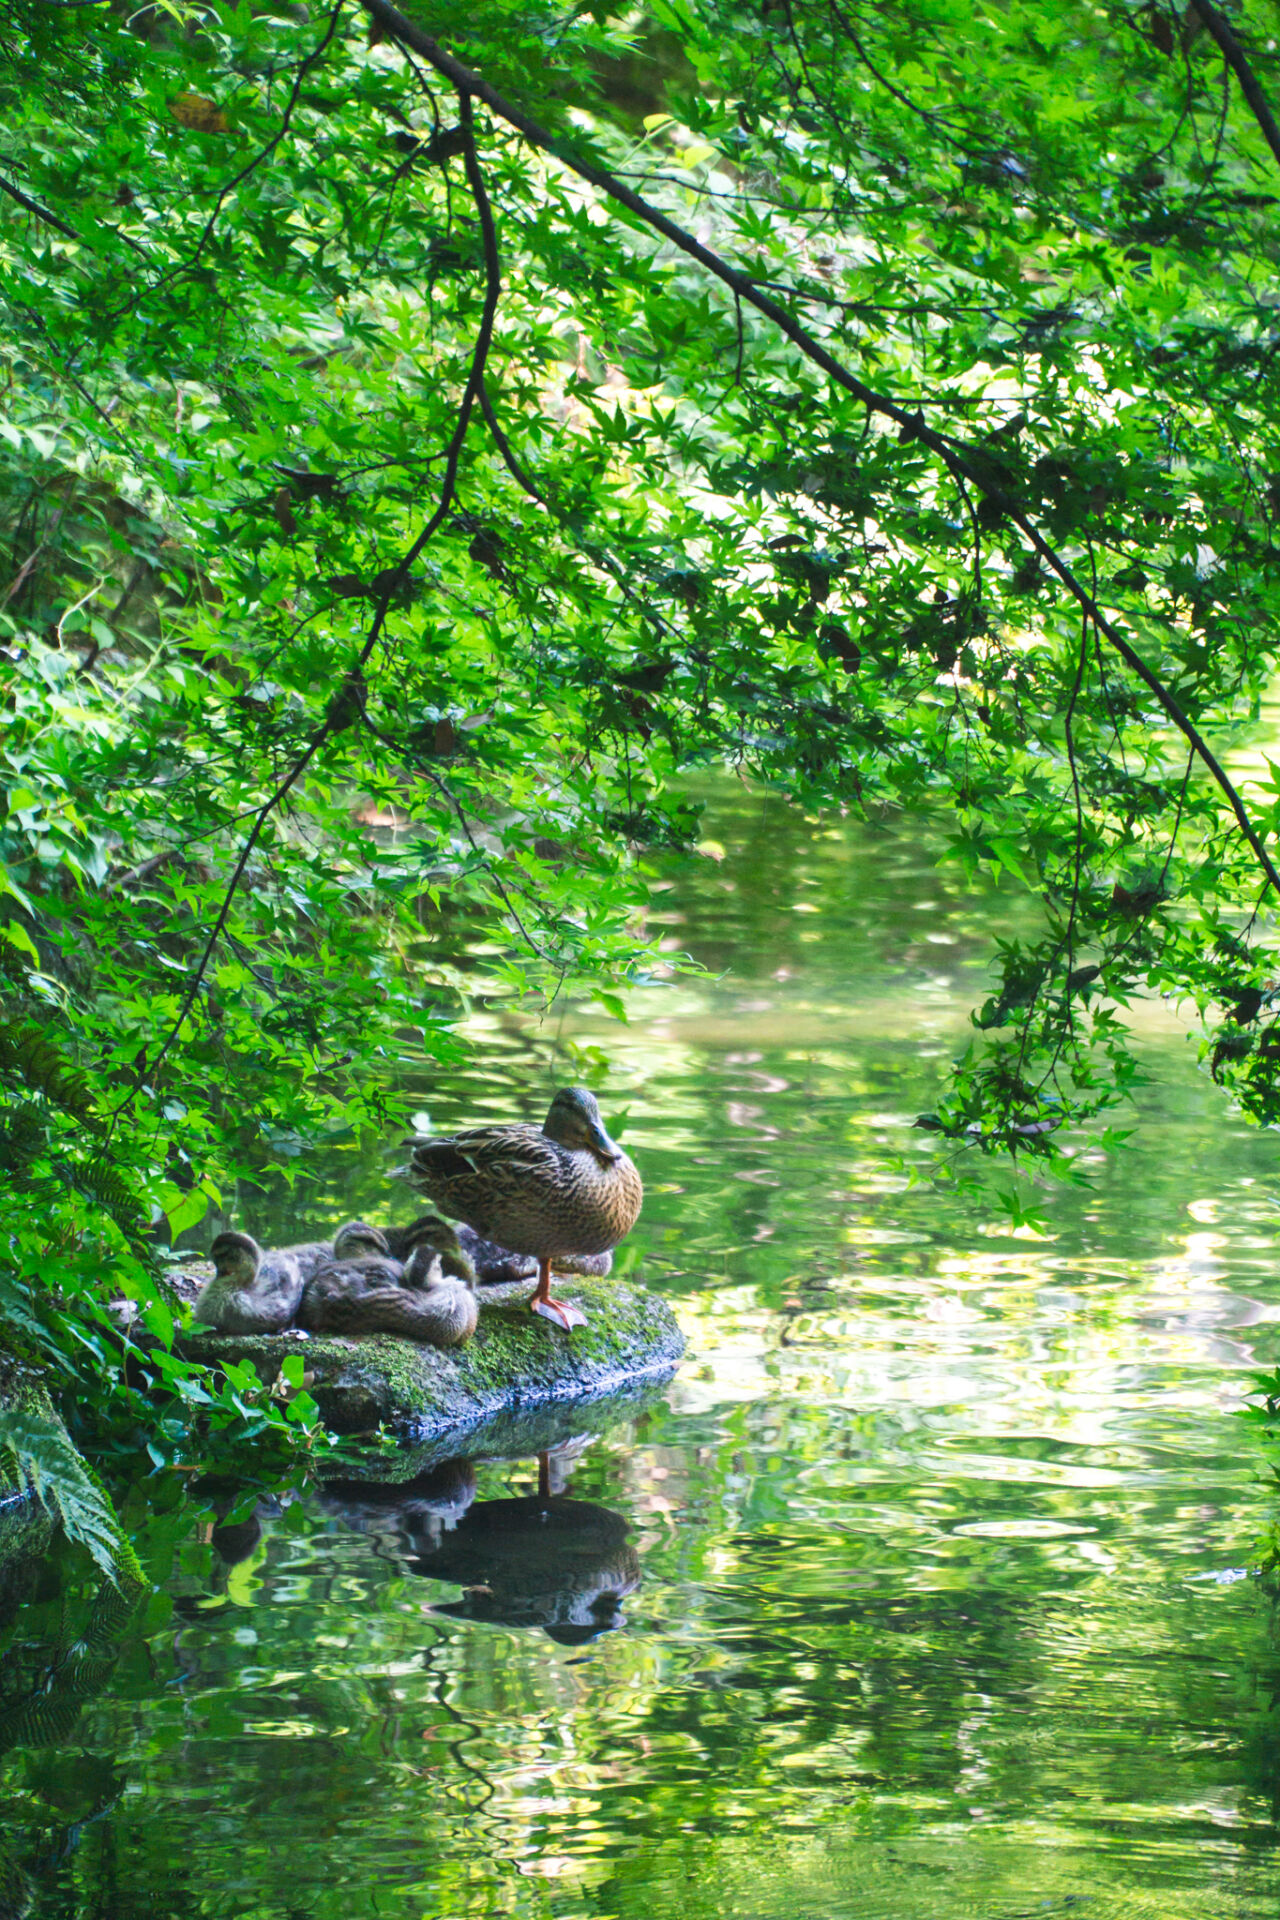 ducks enjoying the pond at Tokugawa-en